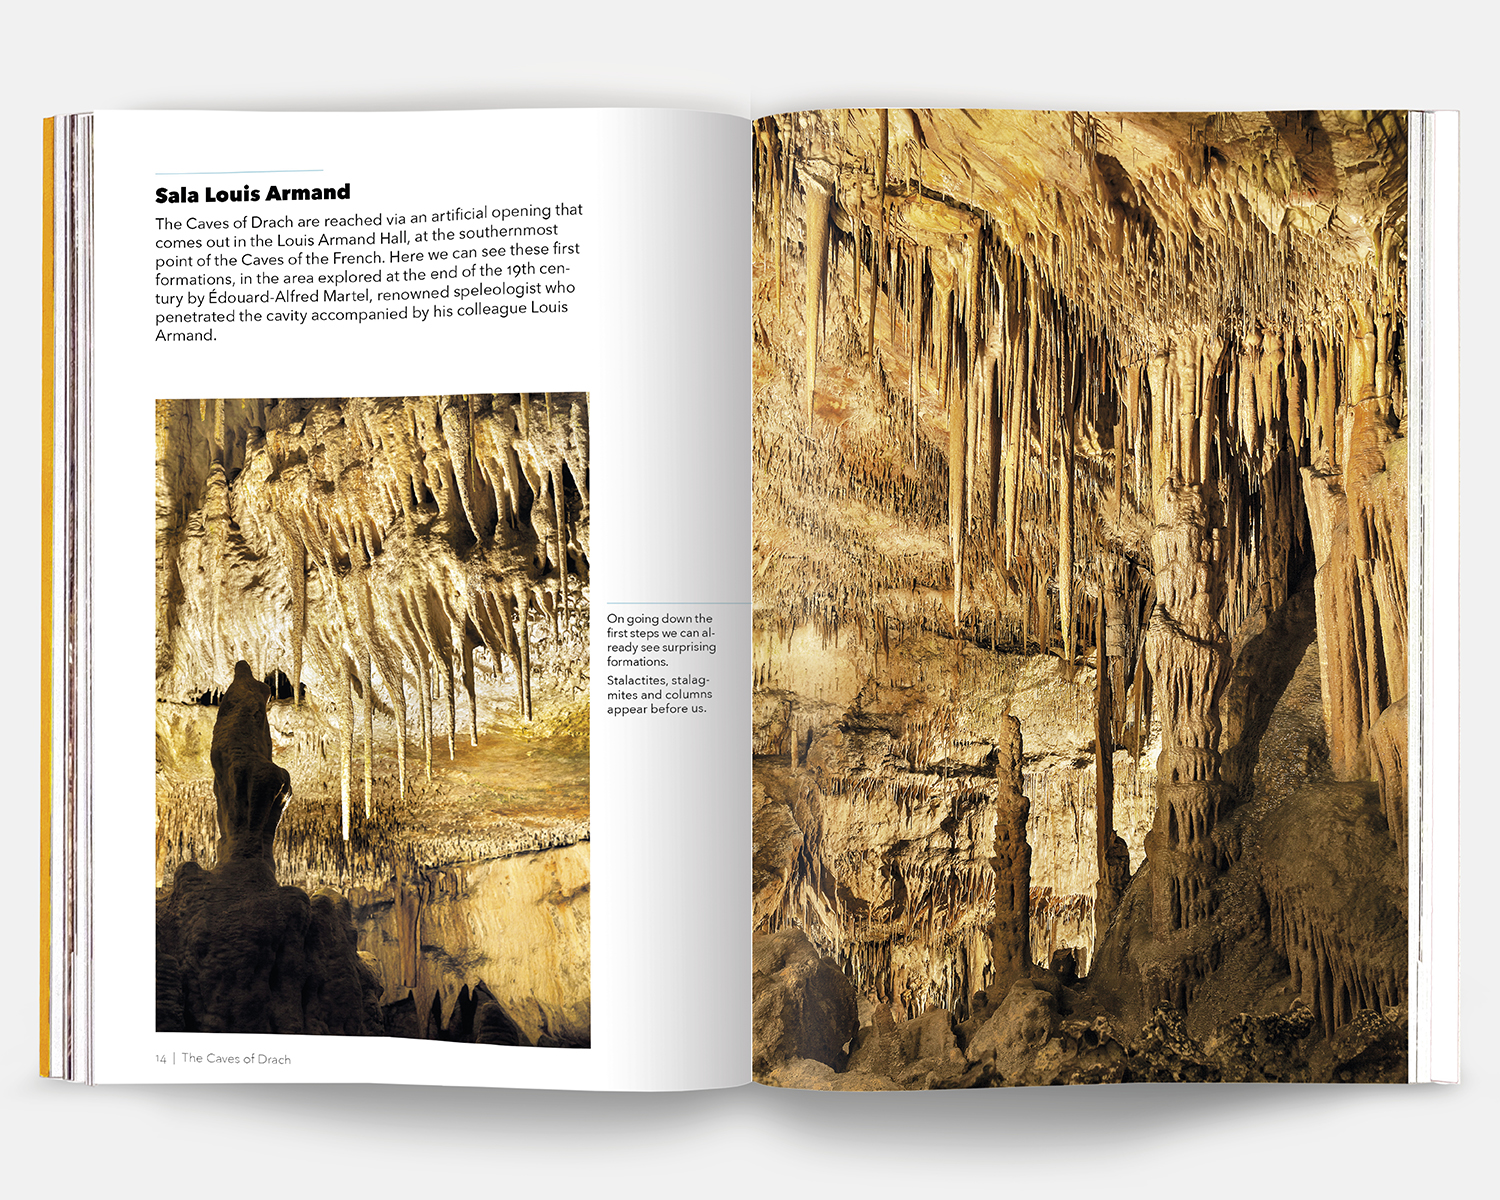 Visita a las Cuevas del Drach gcd 4